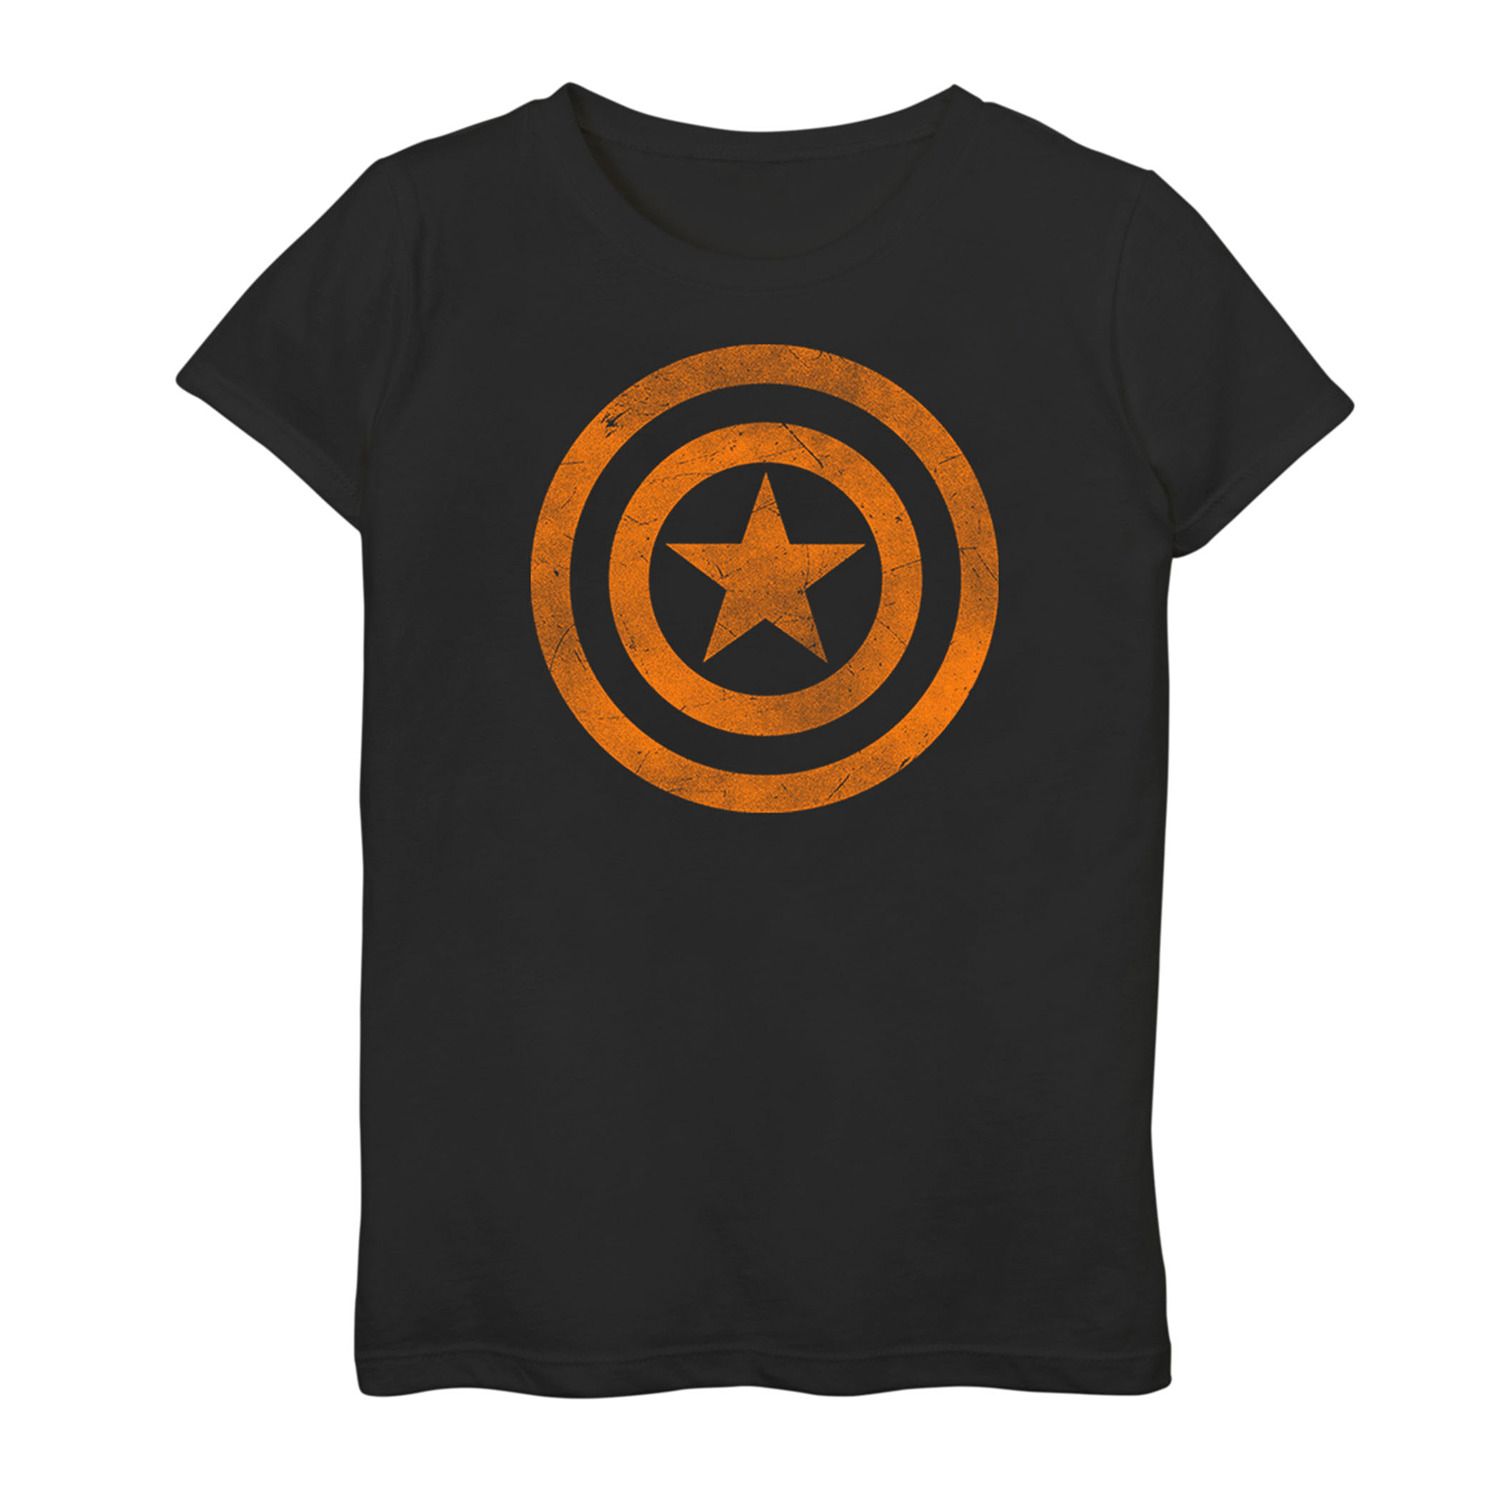 Оранжевая футболка с графическим логотипом Marvel Капитан Америка для девочек 7–16 лет Licensed Character футболка marvel капитан америка с изображением бруклинского щита для девочек 7–16 лет licensed character